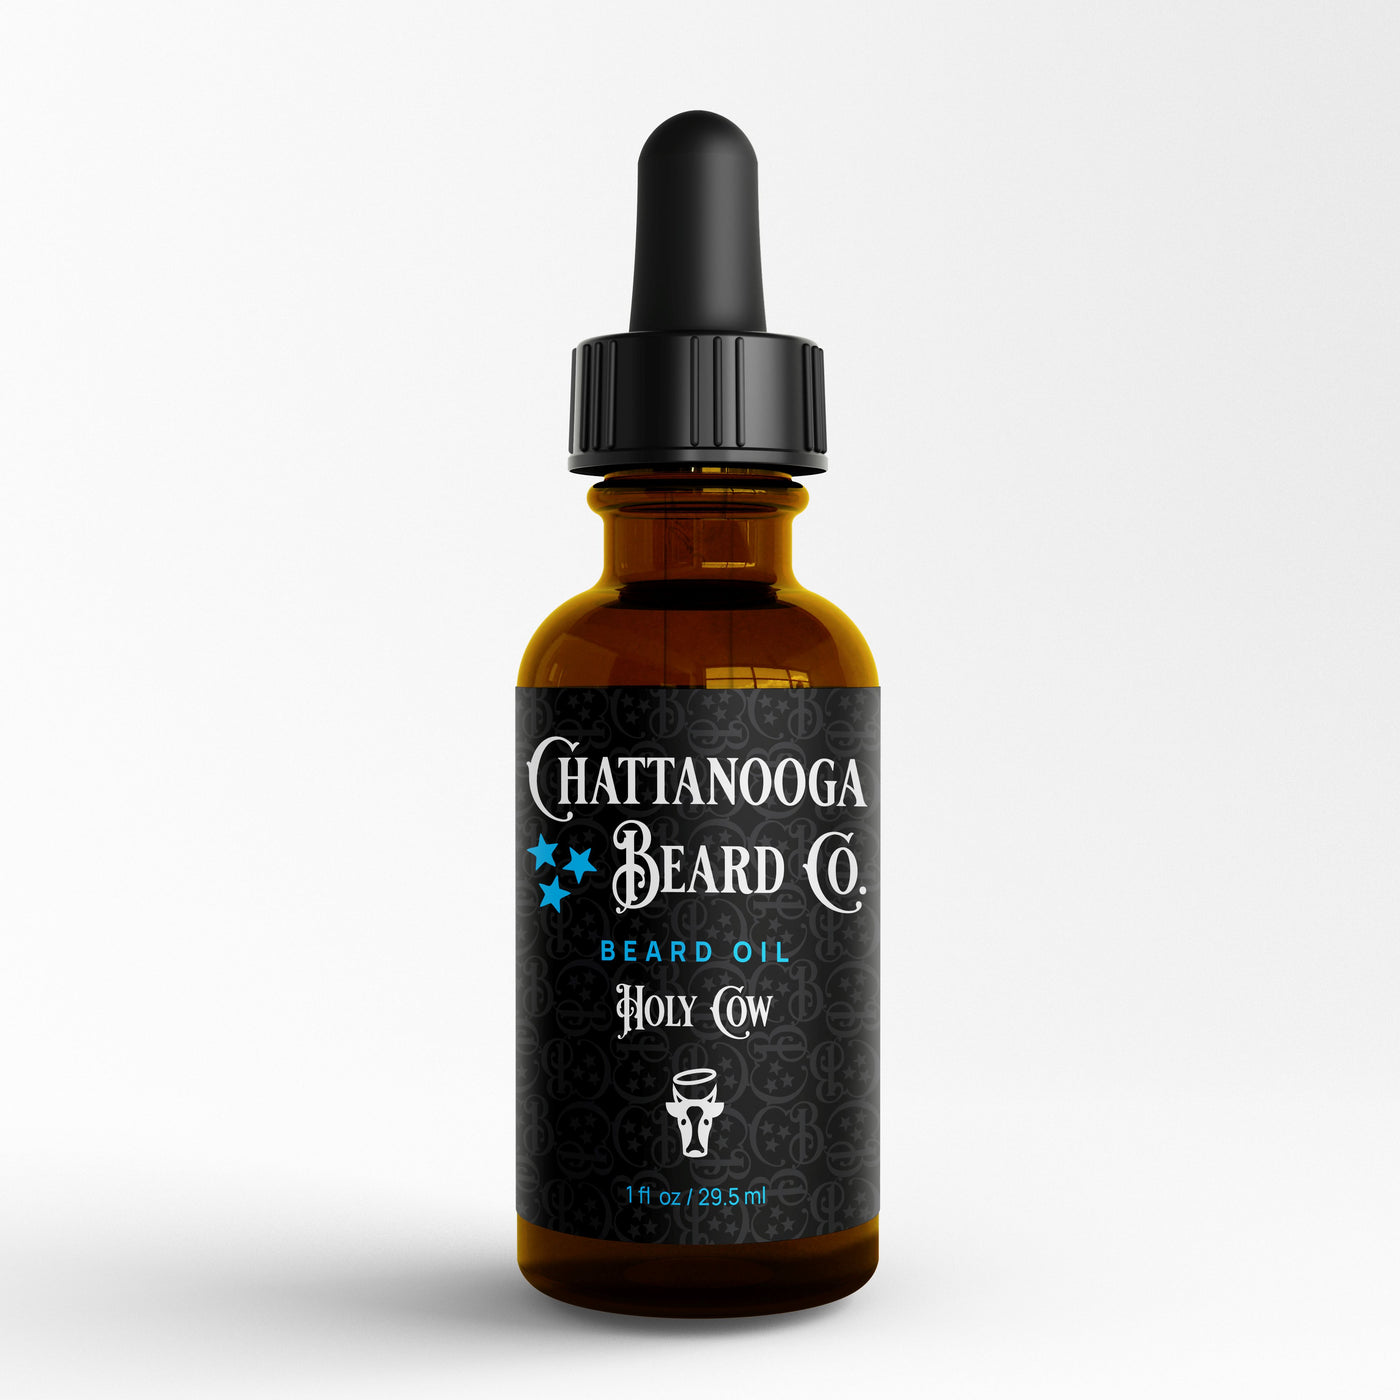 Chattanooga Beard Co. - Beard Oil Oil Chattanooga Beard Co. Holy Cow 